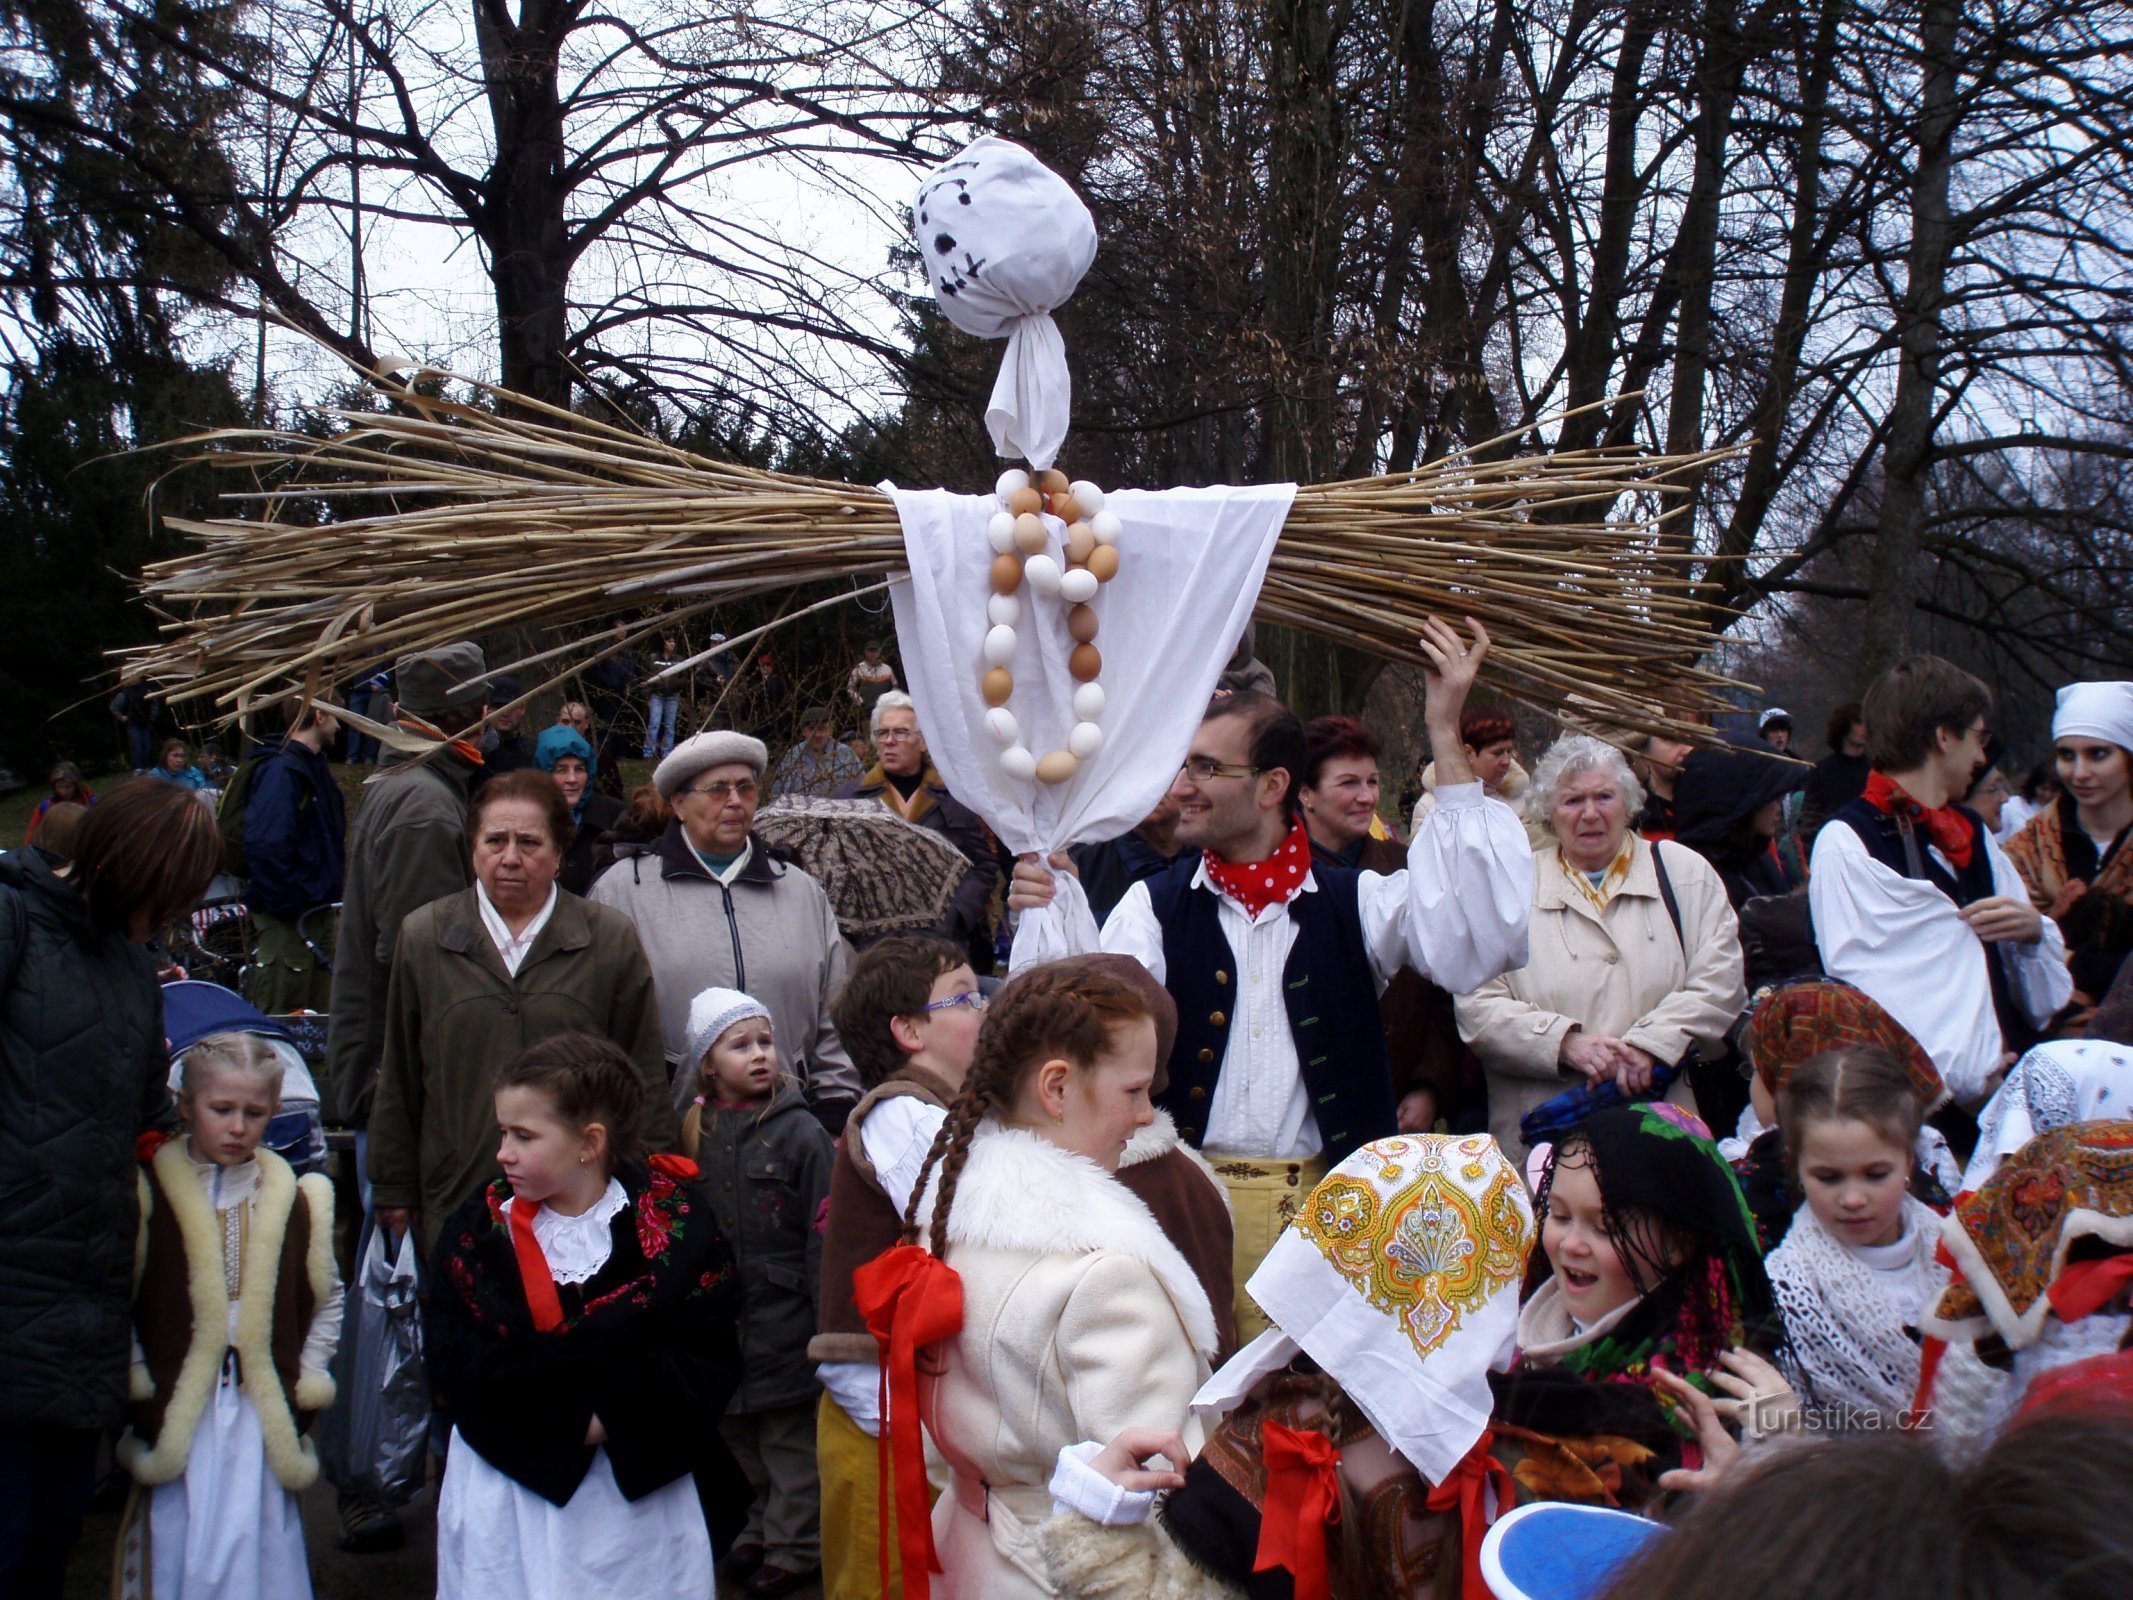 Vynášení Smrtholky z Královýho Hradce (Hradec Králové, 29.3.2009)